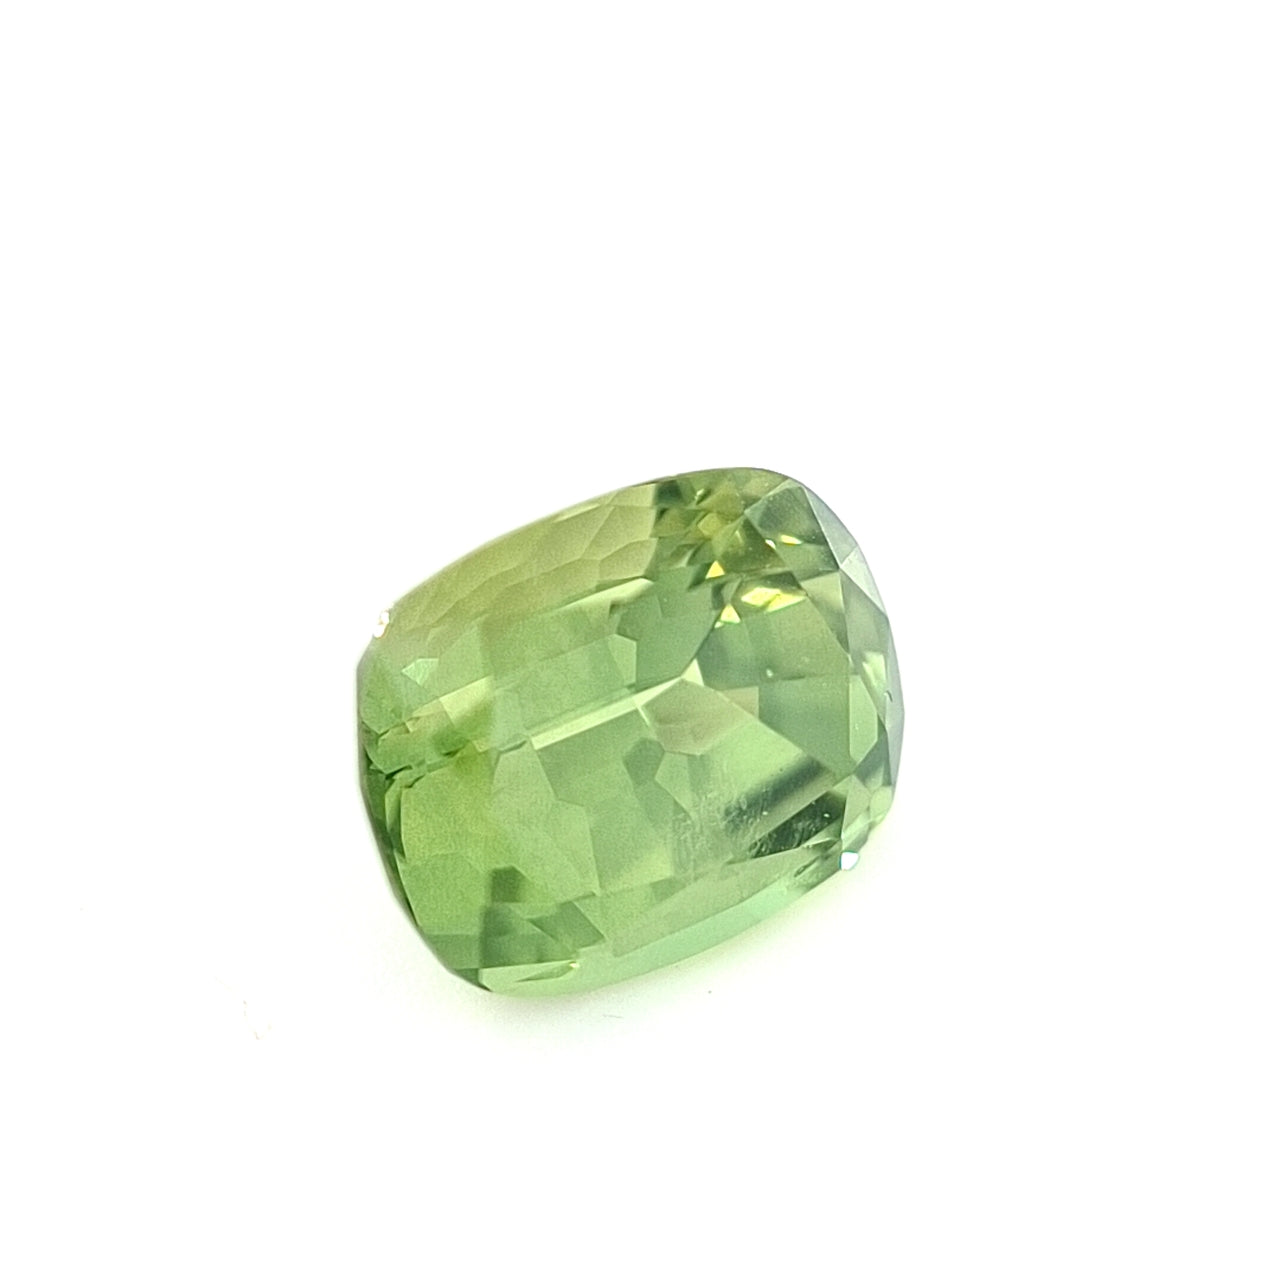 2.17ct Australian Sapphire, Apple Green - Cushion Cut